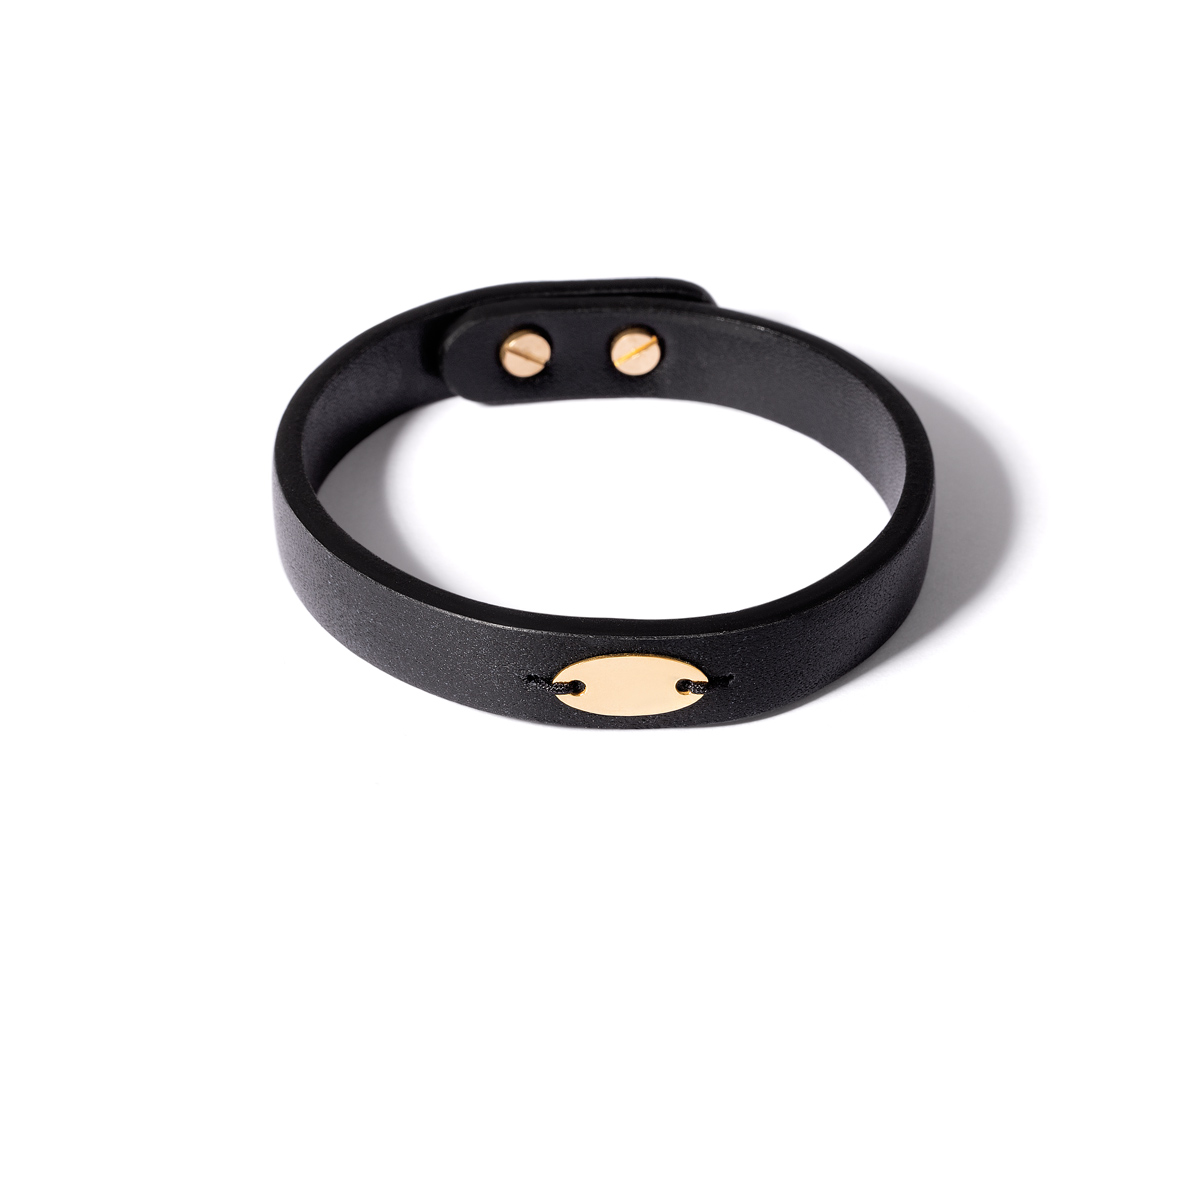 Oval plate leather gold bracelet g